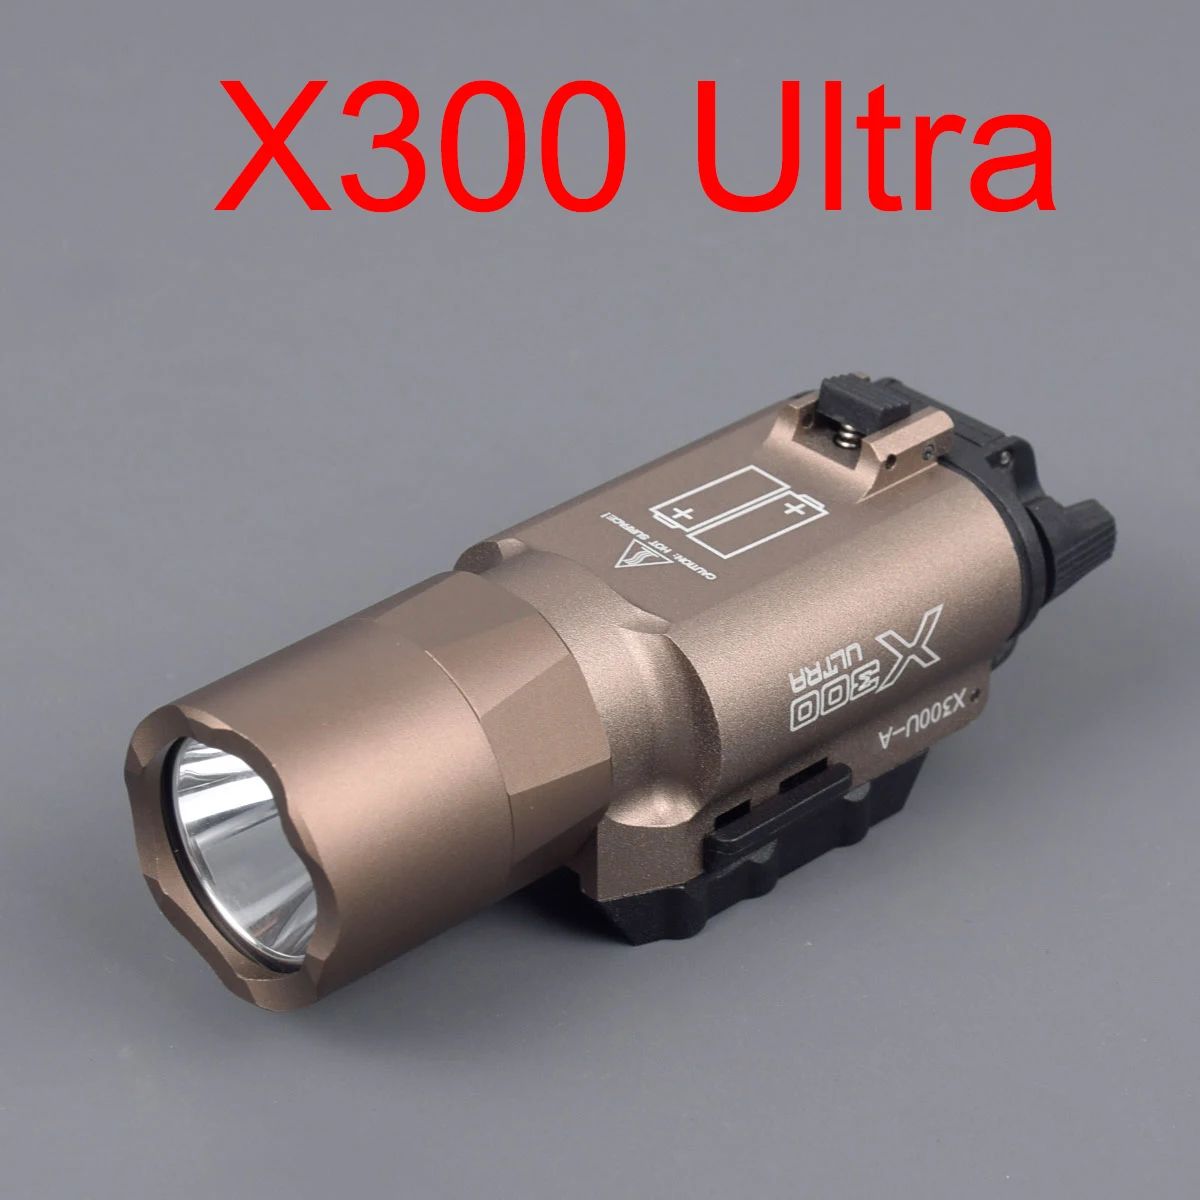 Color:X300 Ultra(Tan)